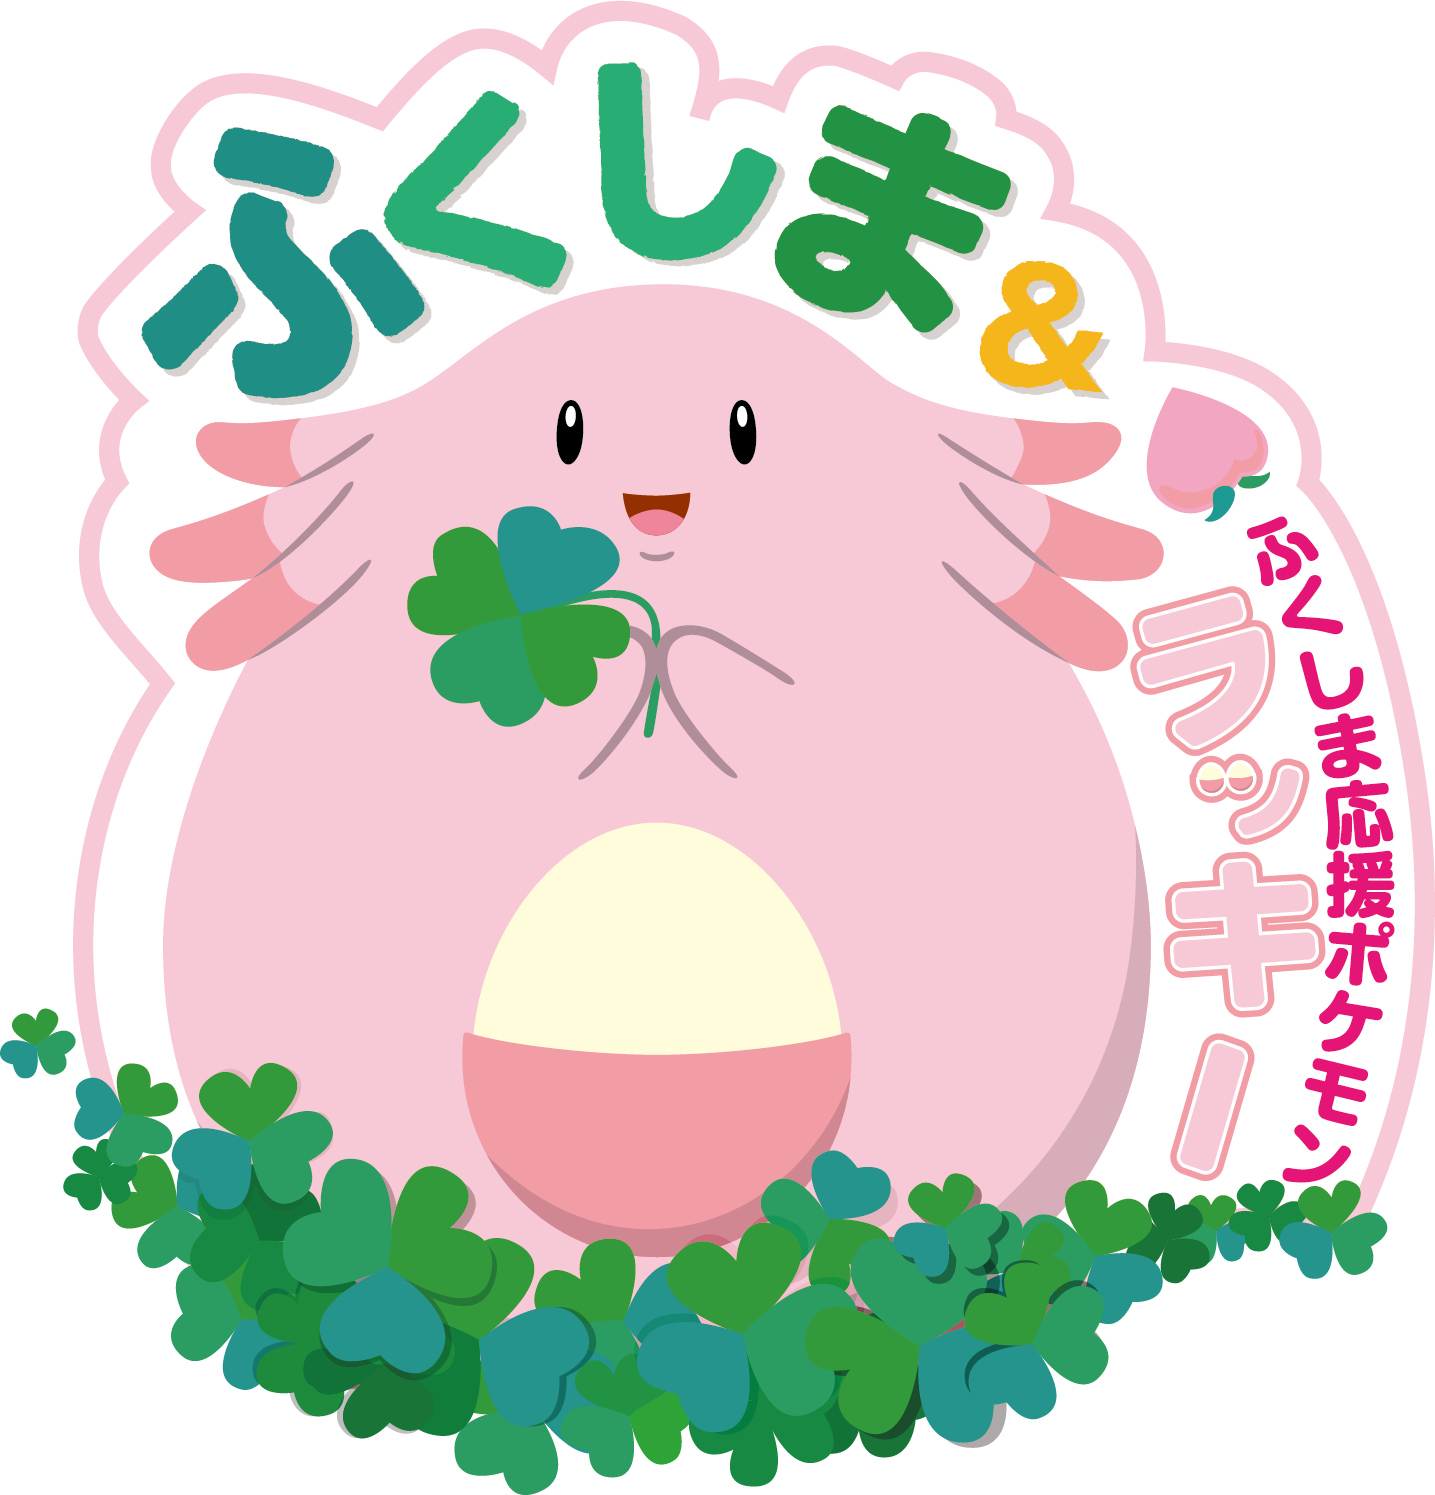 福島県 ラッキー 観光キャンペーンが7月22日から開催 ポケモンgo との連動や謎解きイベントも インサイド